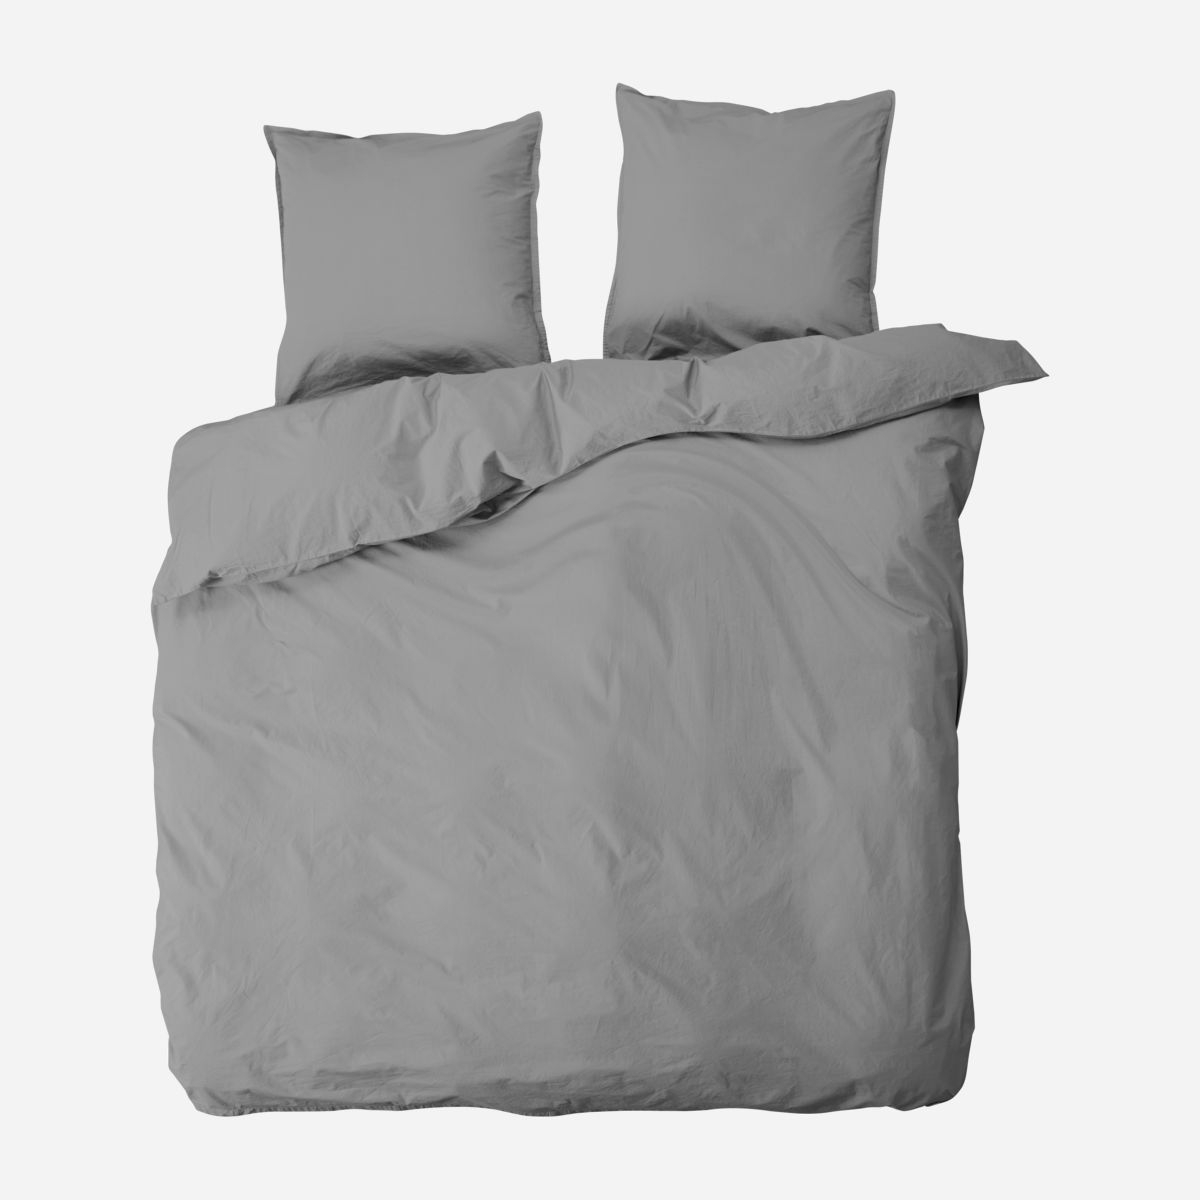 Dobbelt sengesæt, Ingrid, 200 x 220 cm, thunder